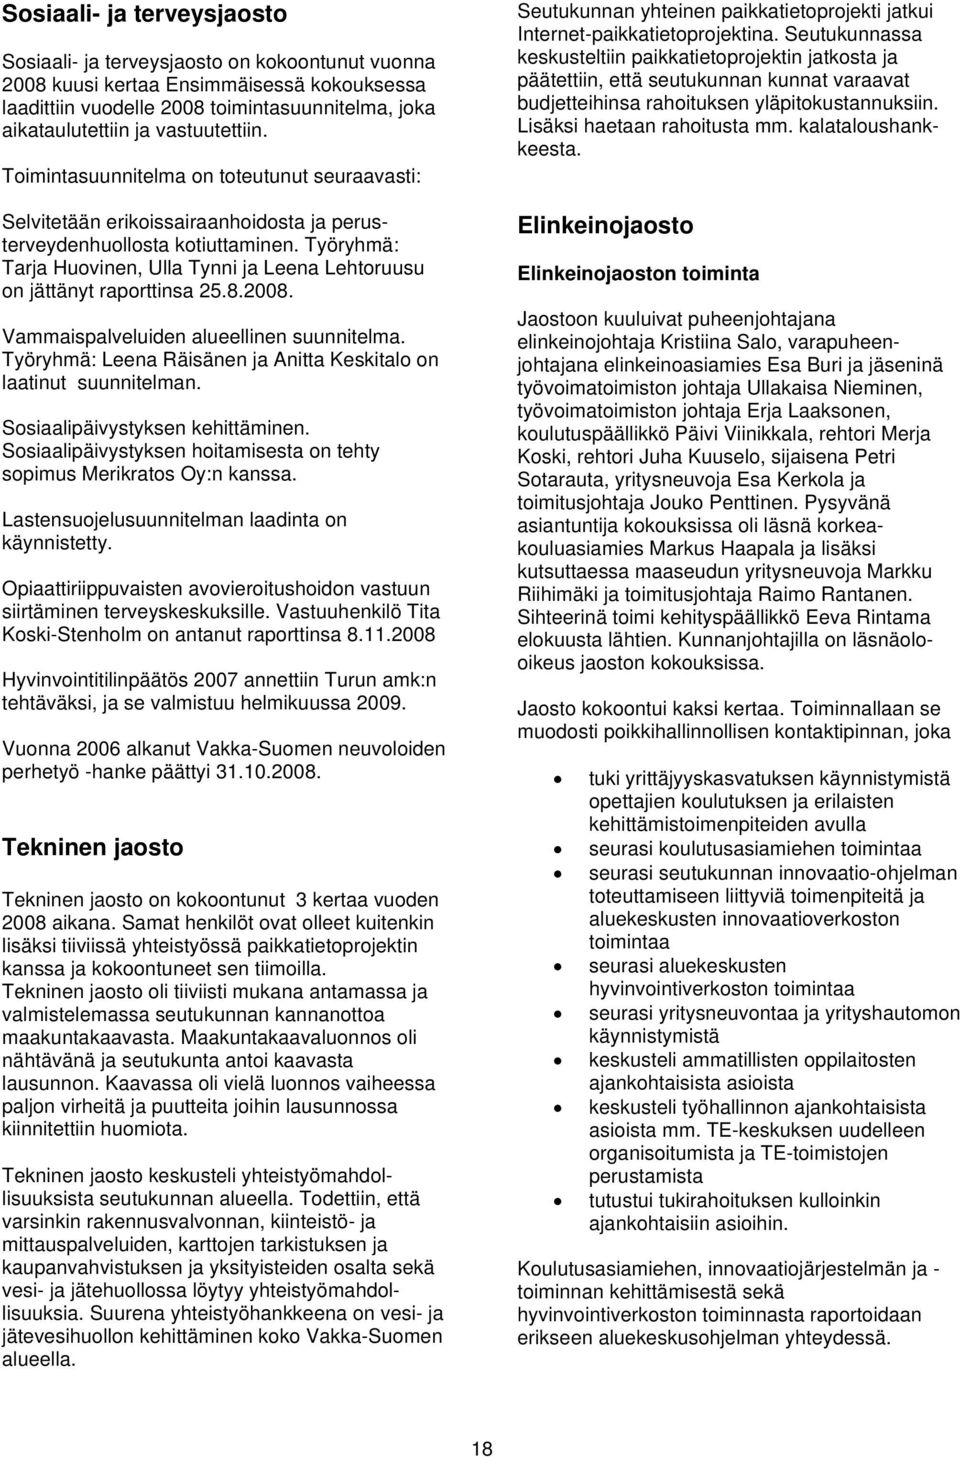 Työryhmä: Tarja Huovinen, Ulla Tynni ja Leena Lehtoruusu on jättänyt raporttinsa 25.8.2008. Vammaispalveluiden alueellinen suunnitelma.